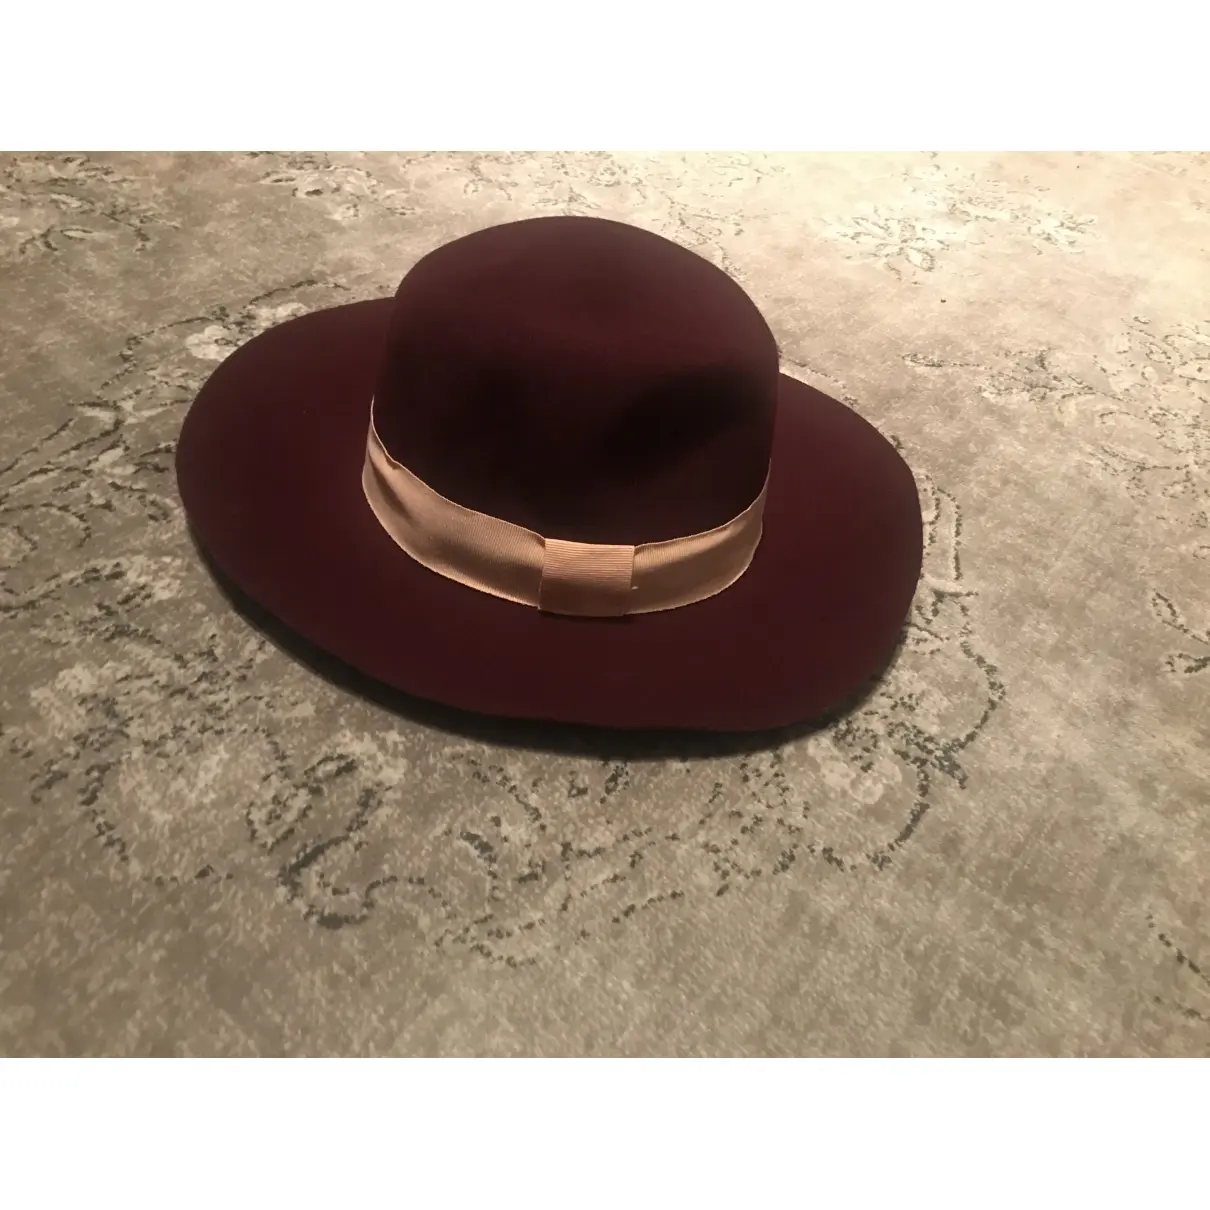 Supertrash Wool hat for sale